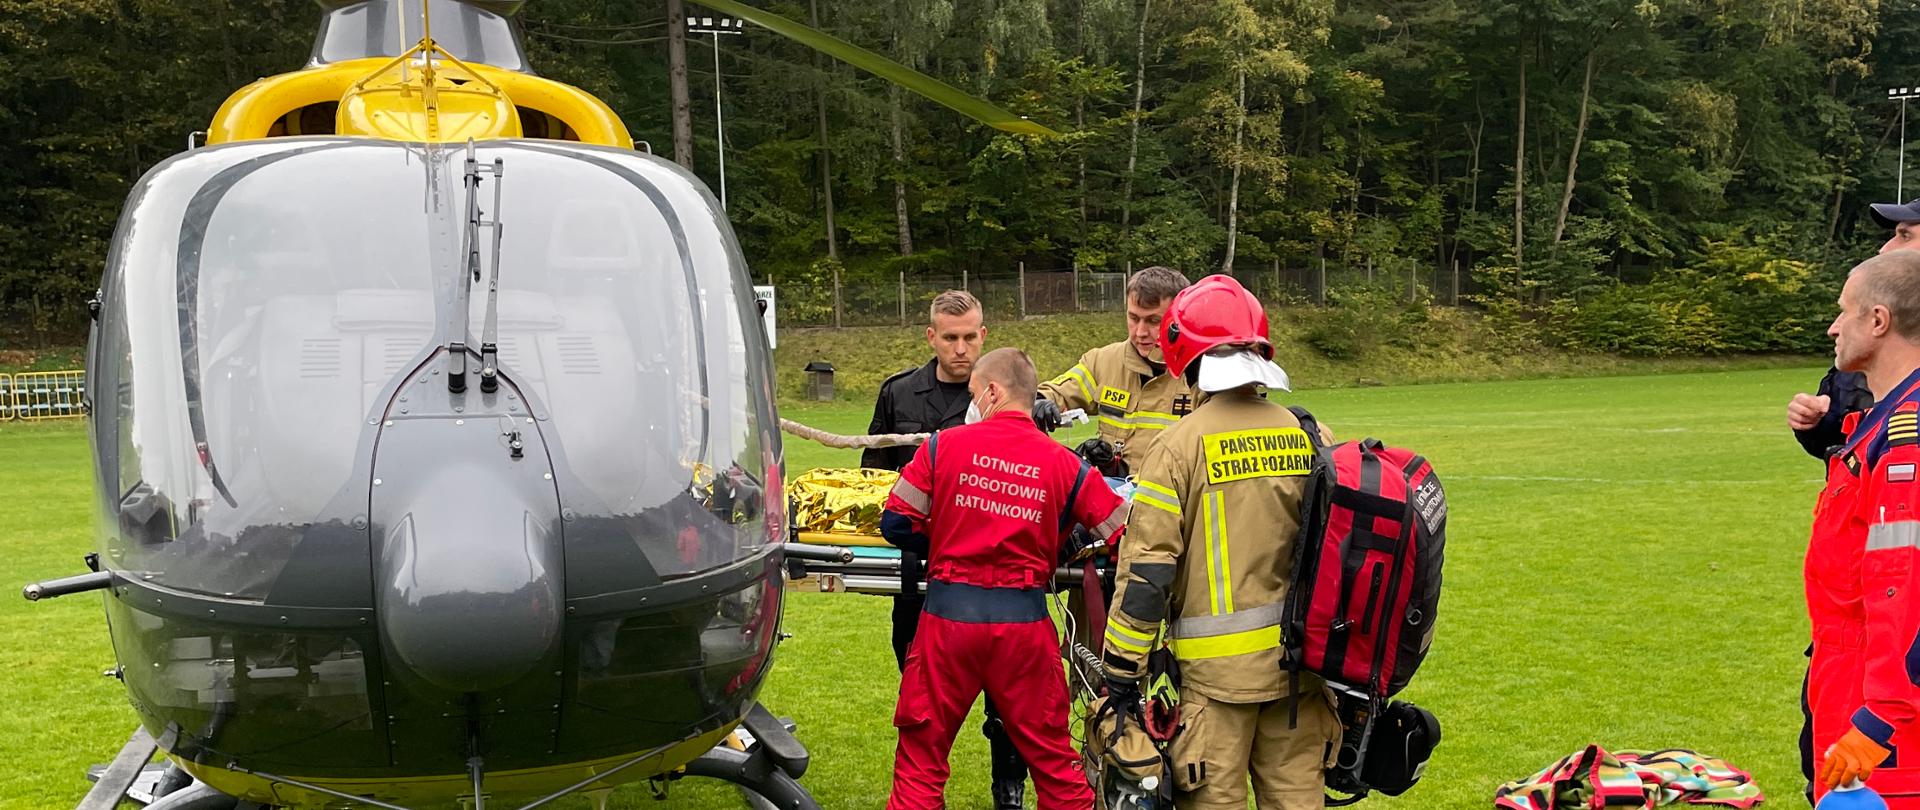 Śmigłowiec Hemes lotniczego pogotowia ratunkowego stojący na płycie boiska. DO śmigłowca strażacy i ratownicy wkładają poszkodowaną osobę na noszach